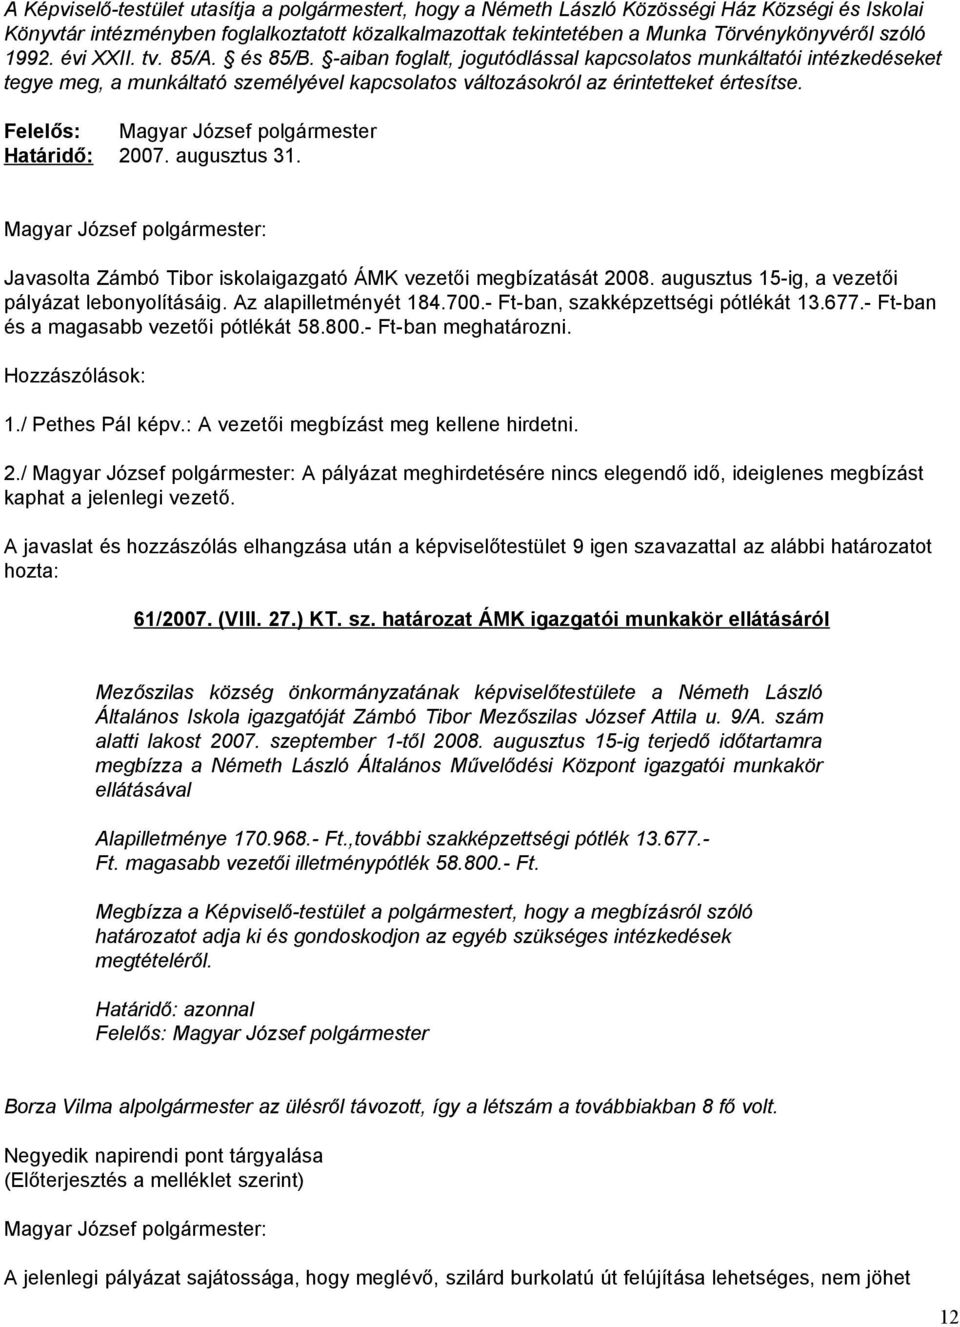 Határidő: 2007. augusztus 31. Magyar József polgármester: Javasolta Zámbó Tibor iskolaigazgató ÁMK vezetői megbízatását 2008. augusztus 15-ig, a vezetői pályázat lebonyolításáig.